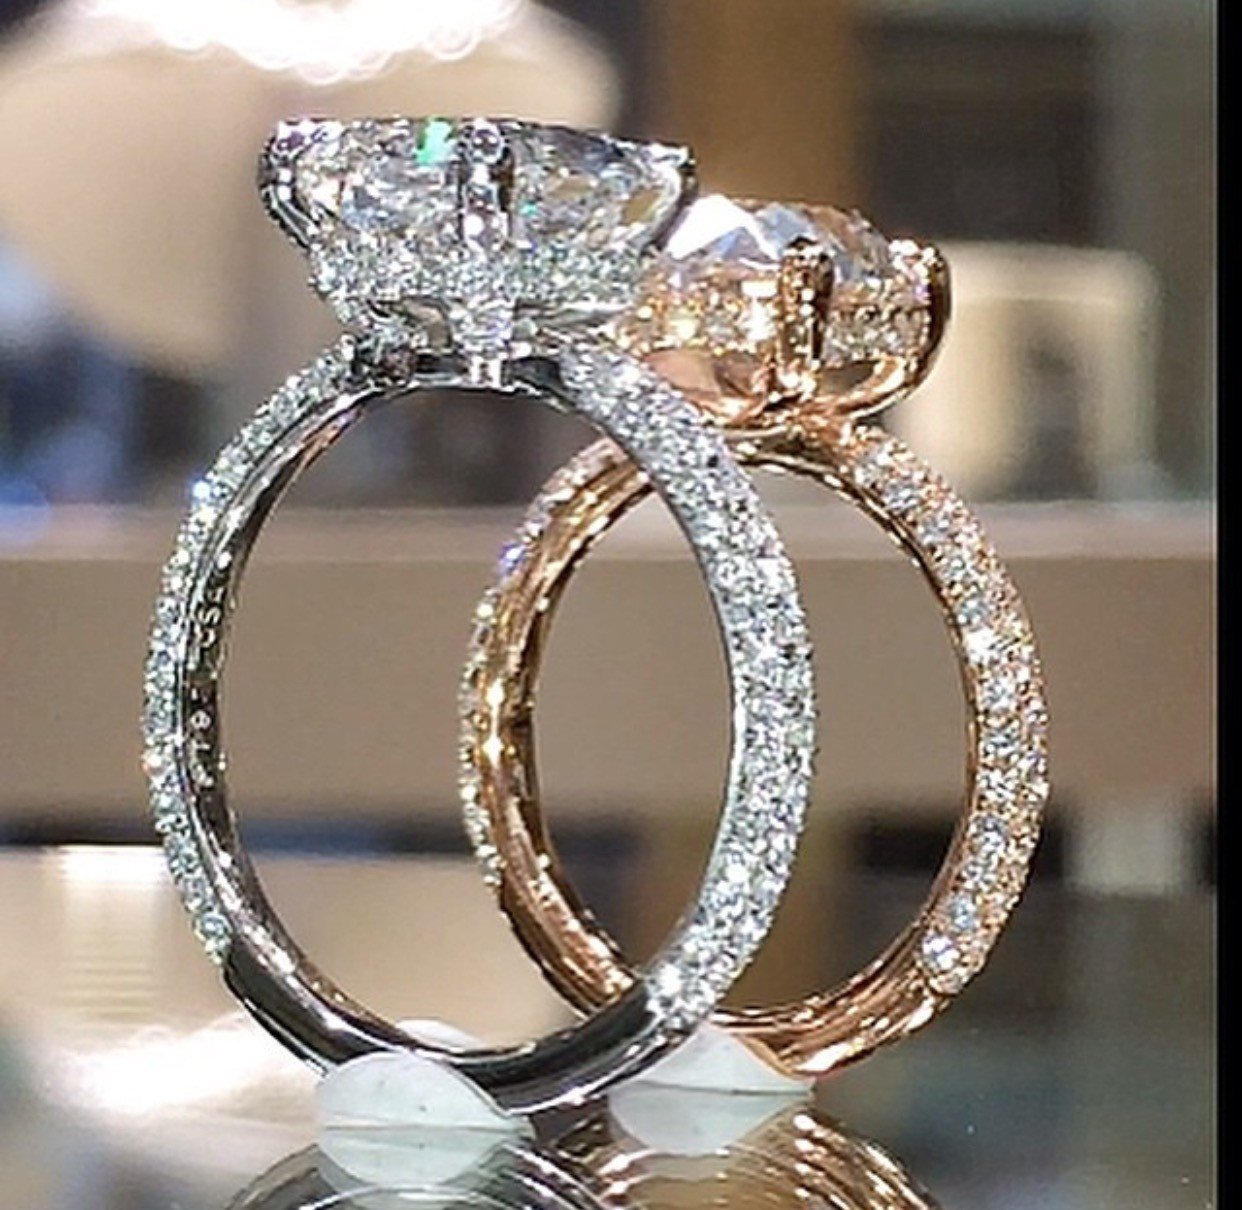 Ri n. Эпл Даймонд кольцо с бриллиантом. Обручальные кольца диамонд. Красивые кольца. Самые красивые кольца.